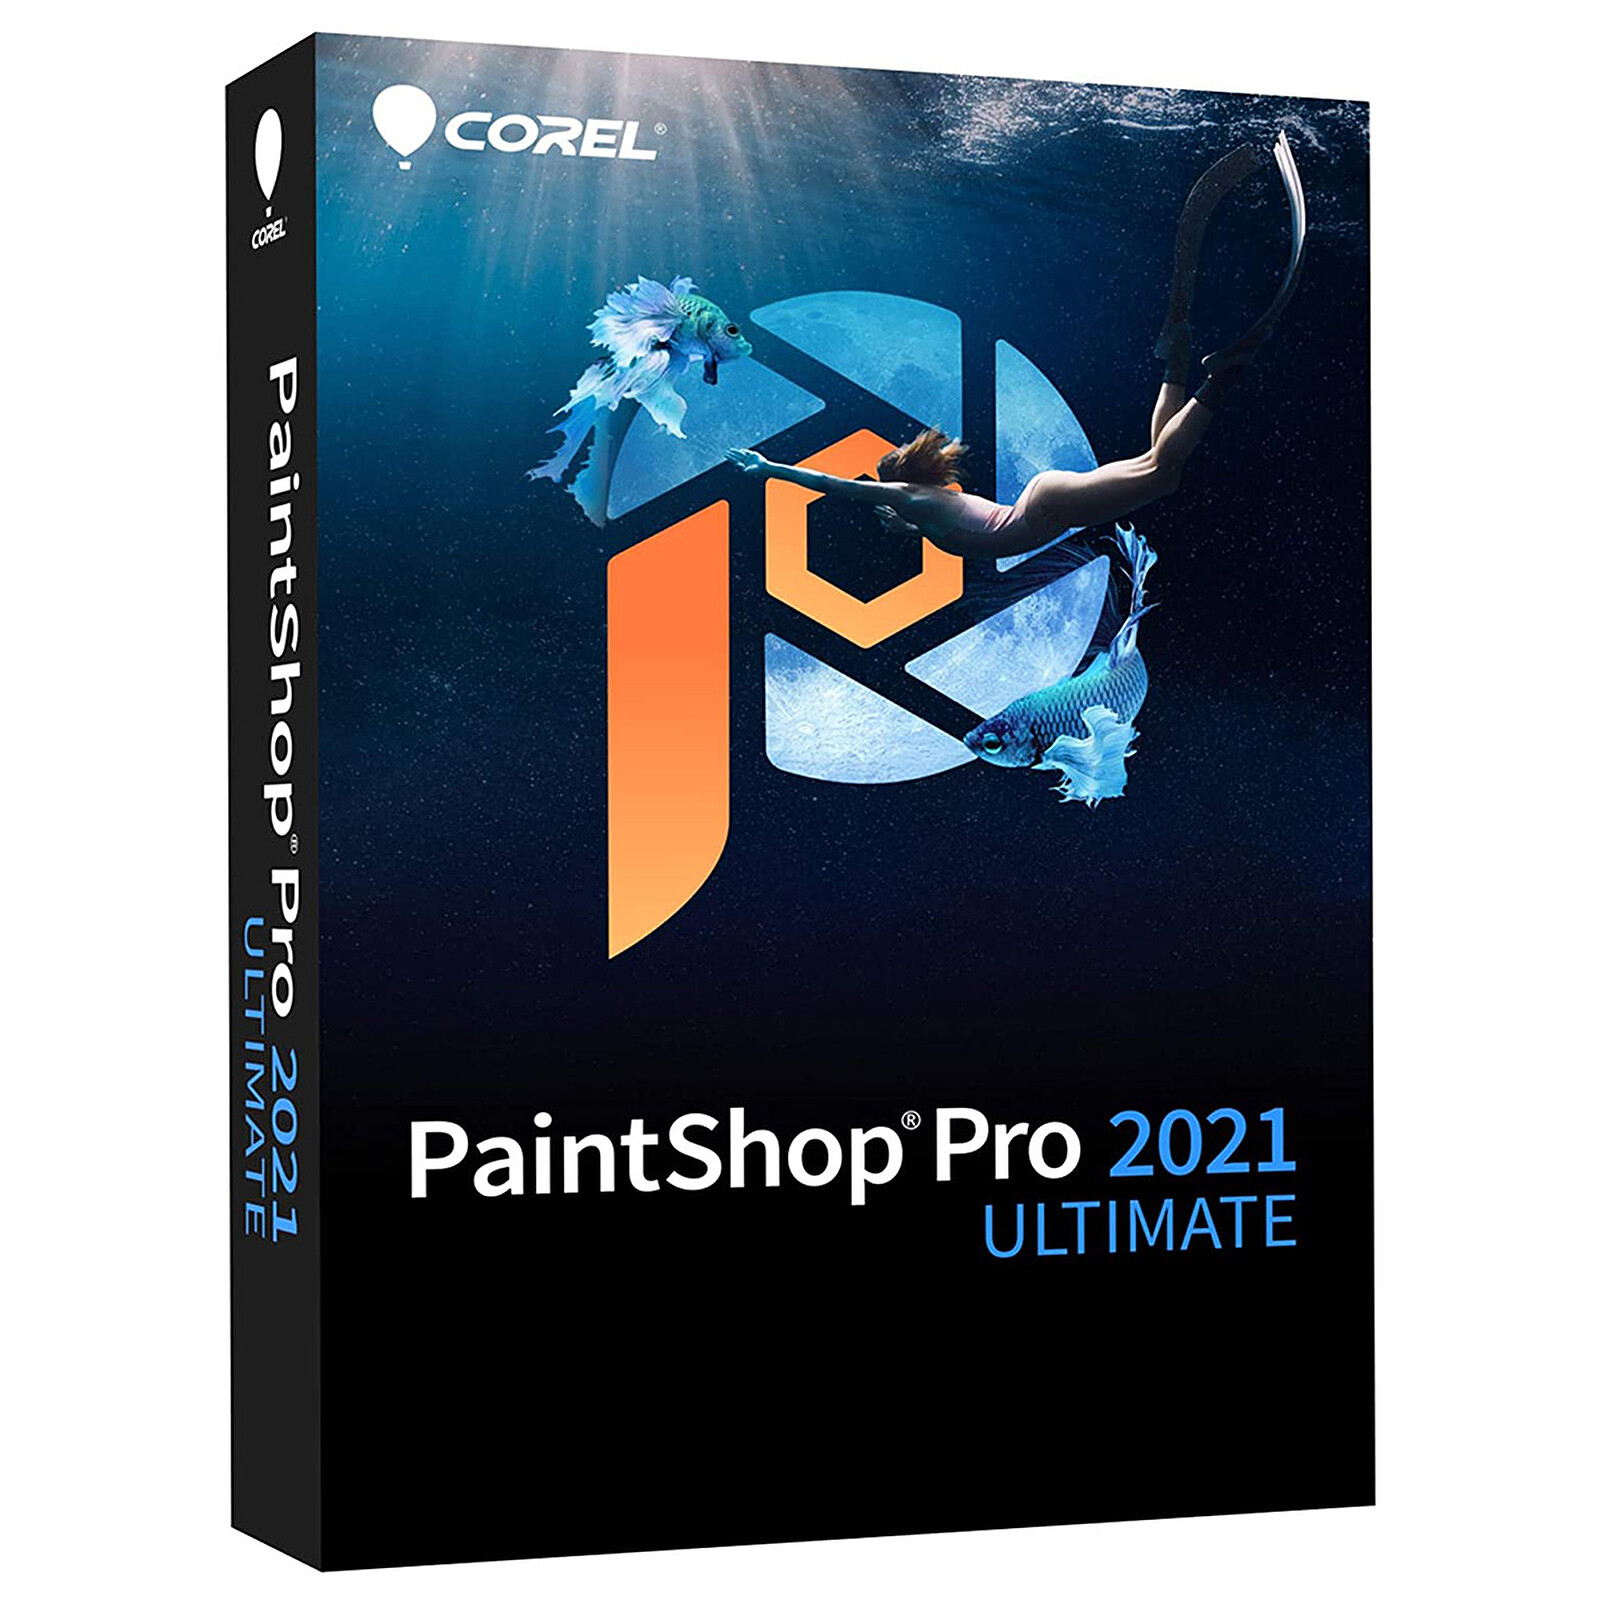 download the last version for ipod Corel Paintshop 2023 Pro Ultimate 25.2.0.58